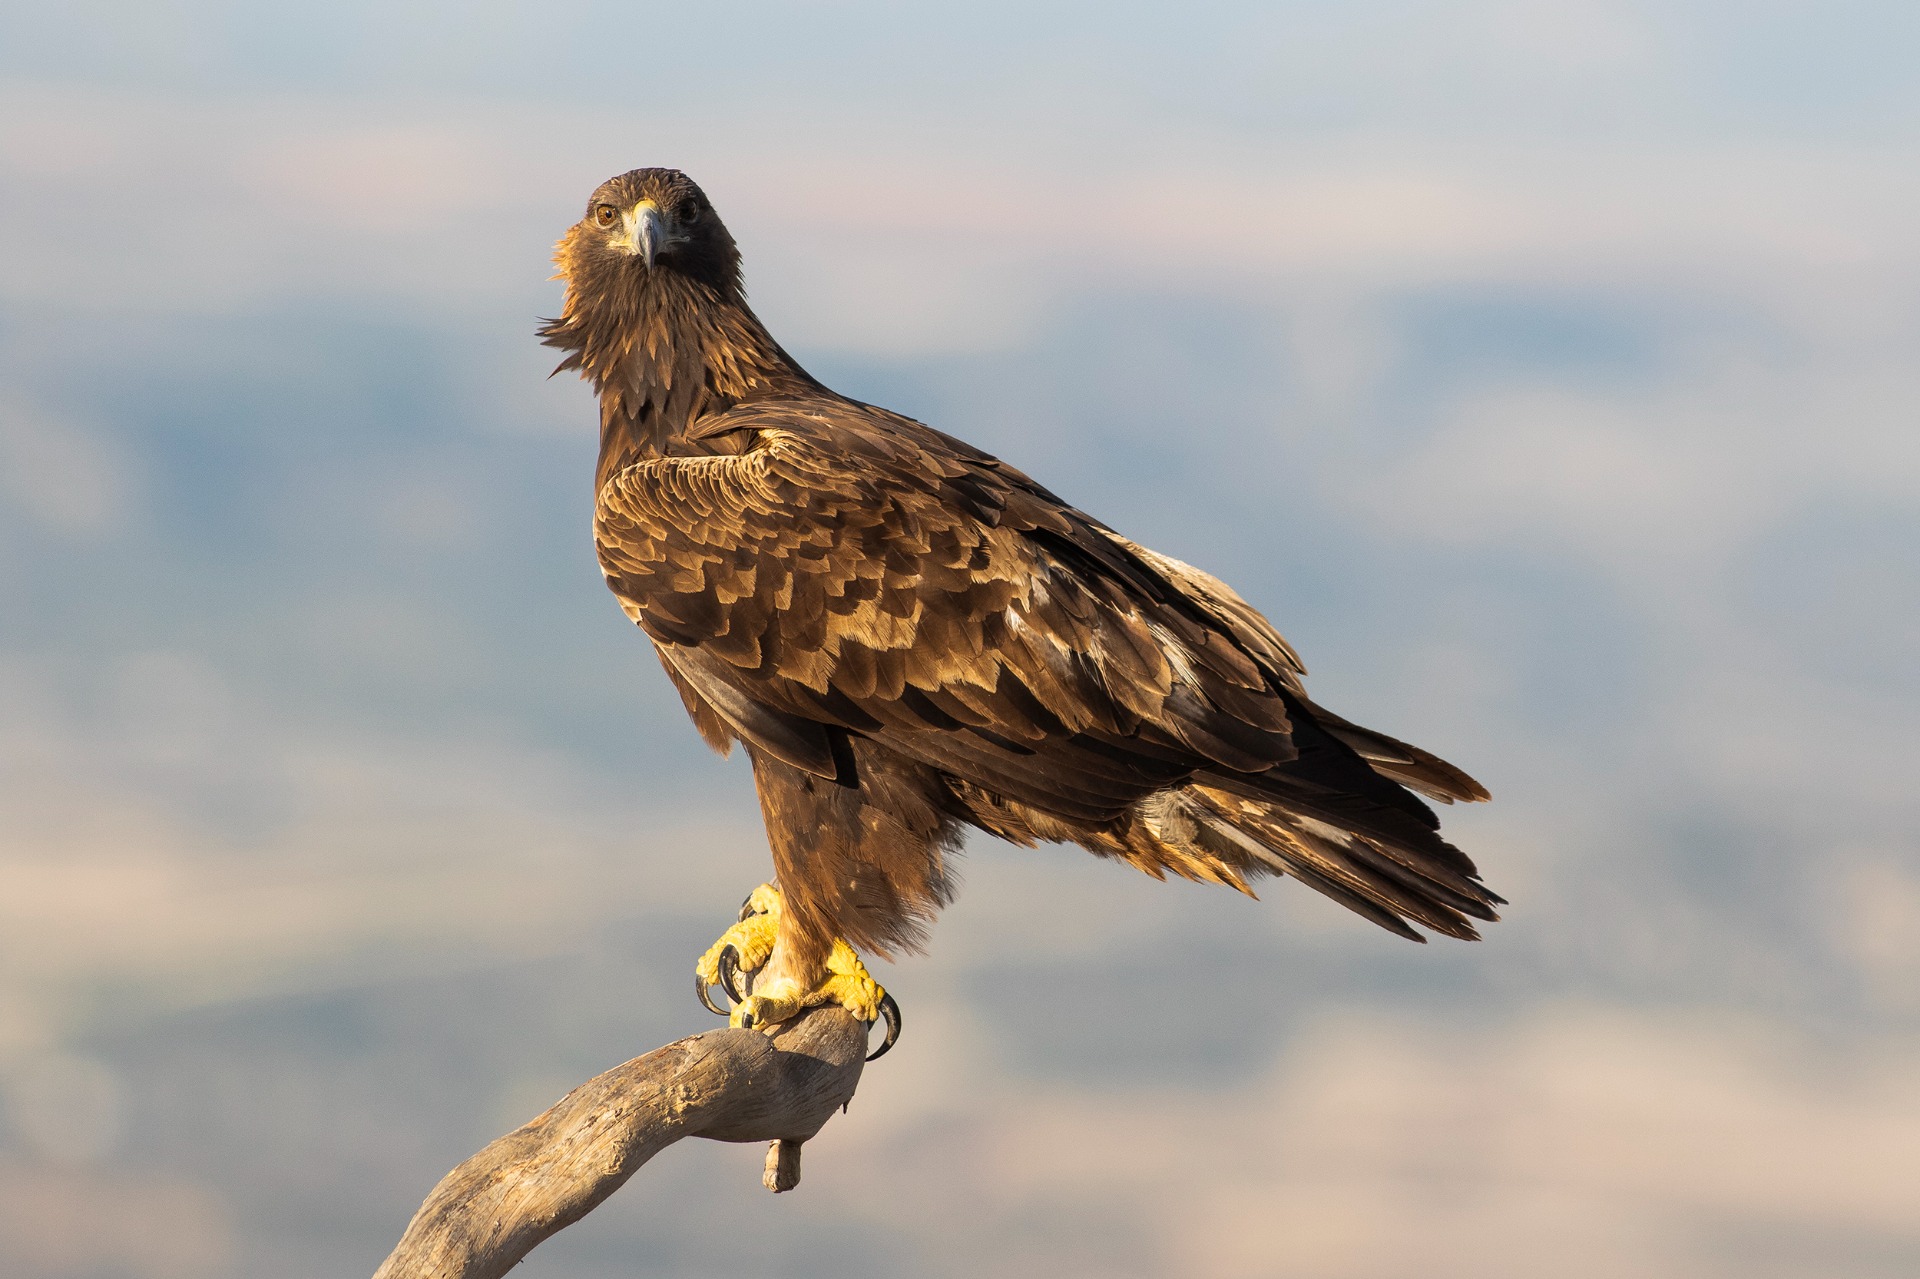 Aguila en primer plano con paisaje de fondo